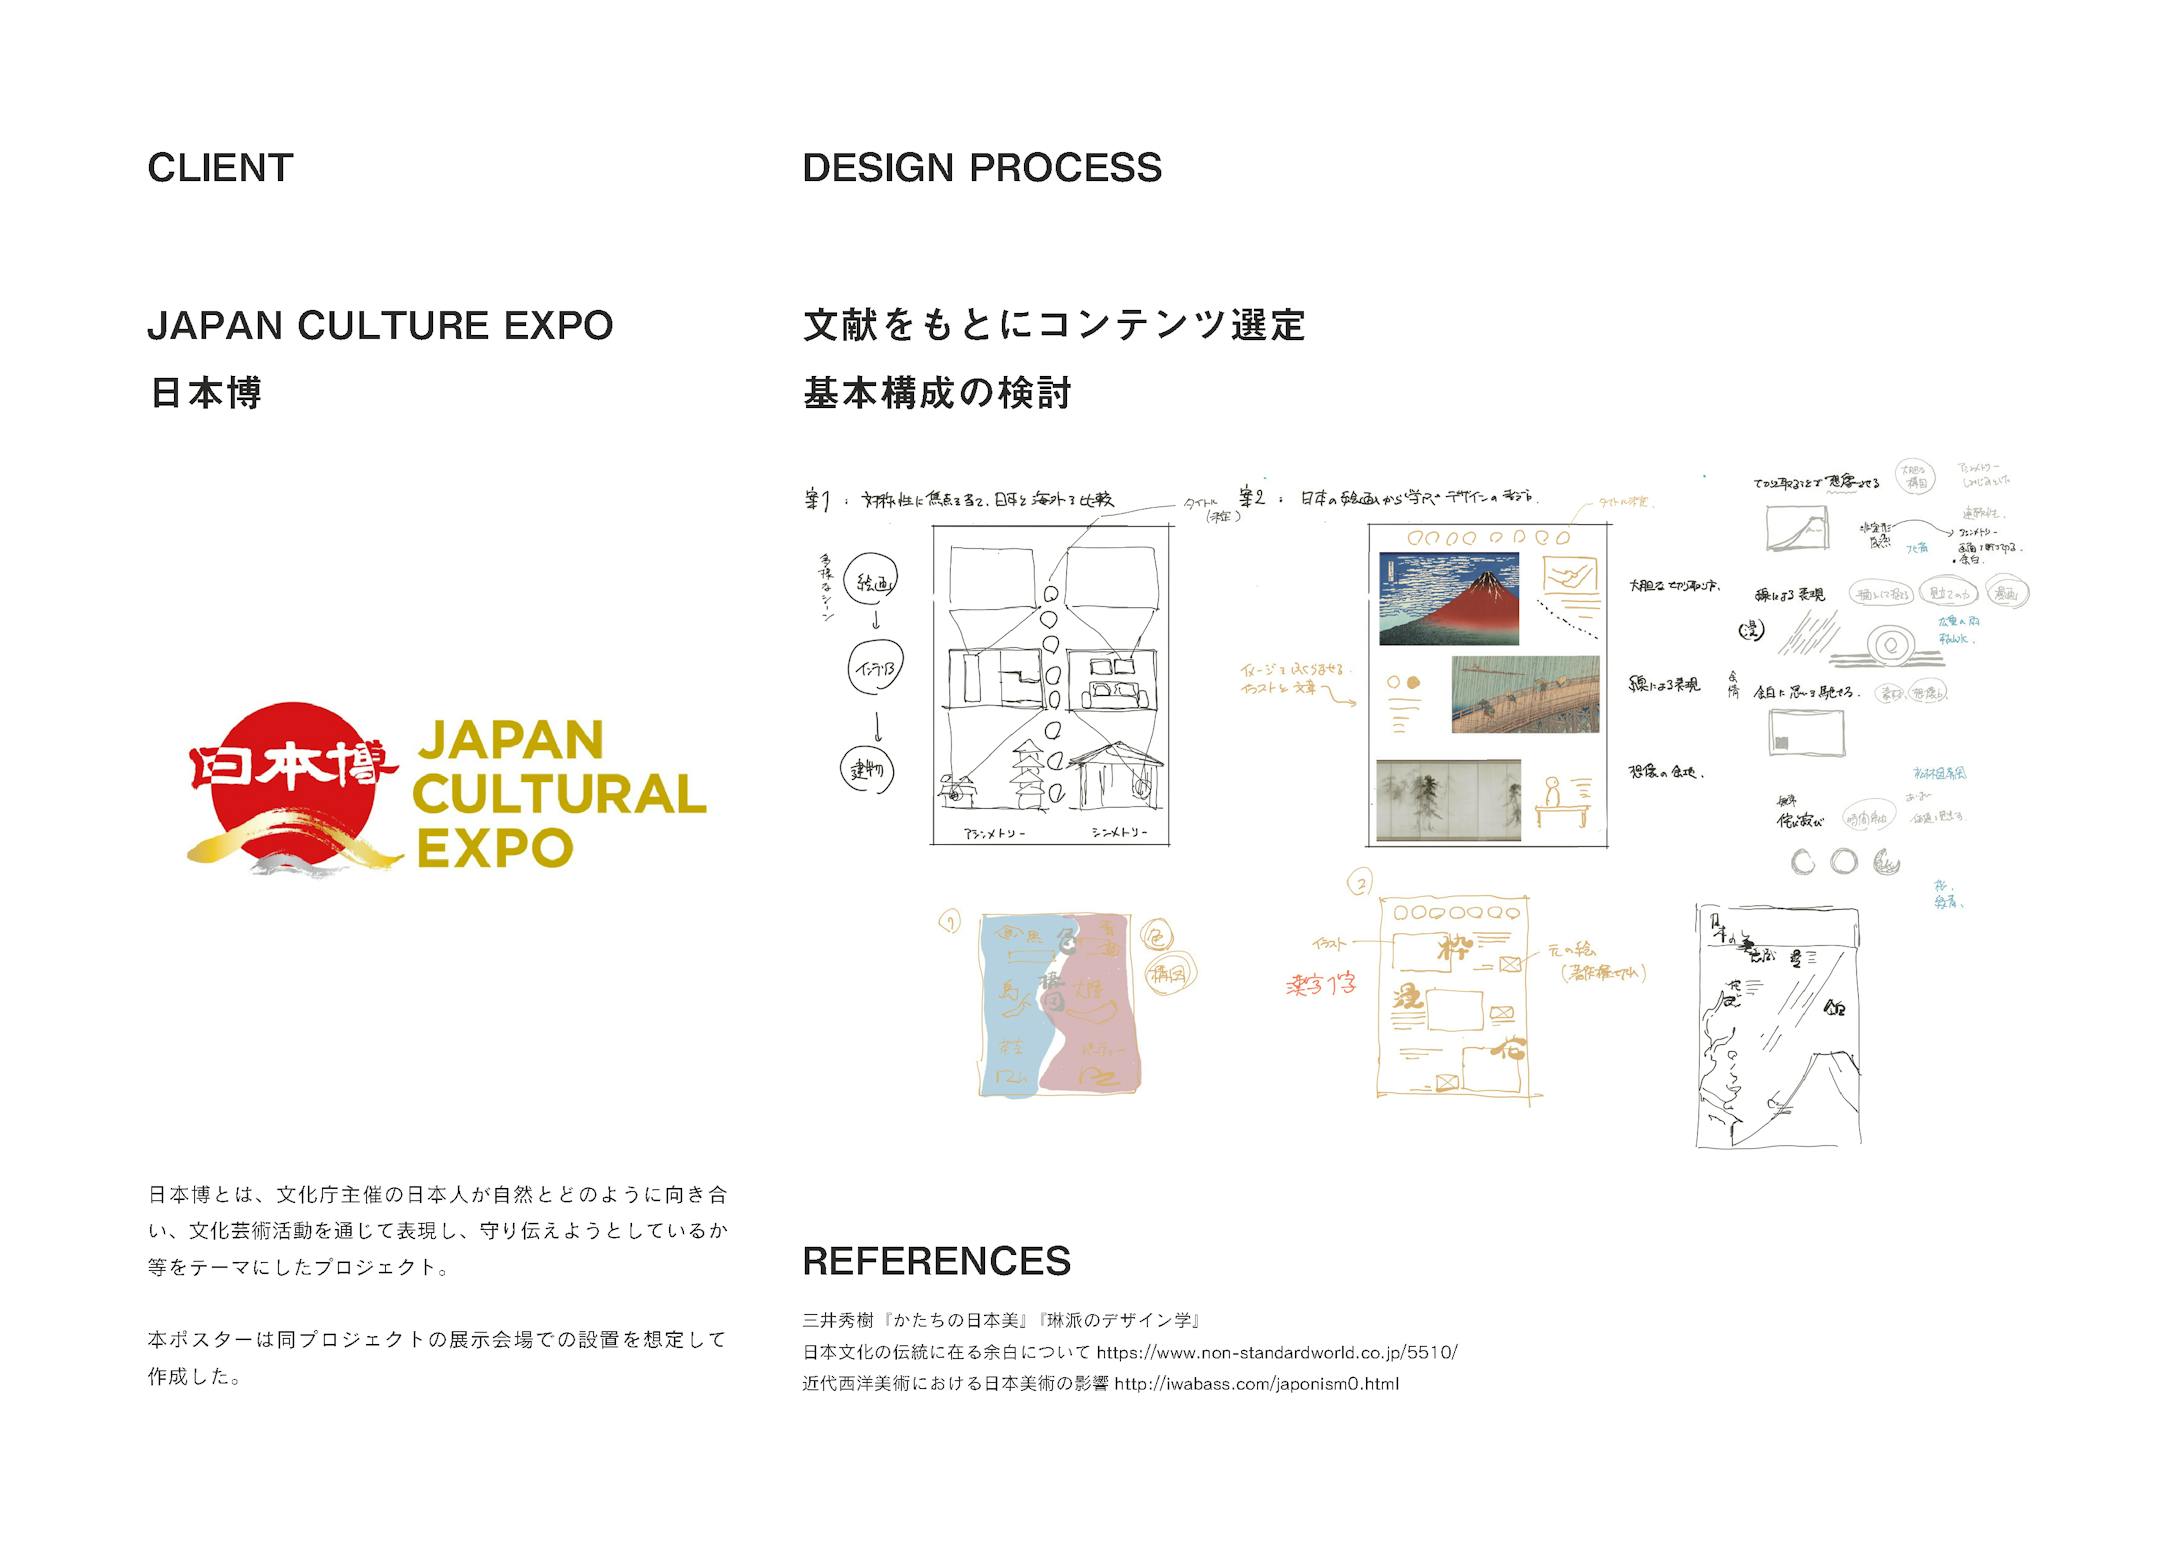 インフォグラフィック『日本画から学ぶ平面表現』-3